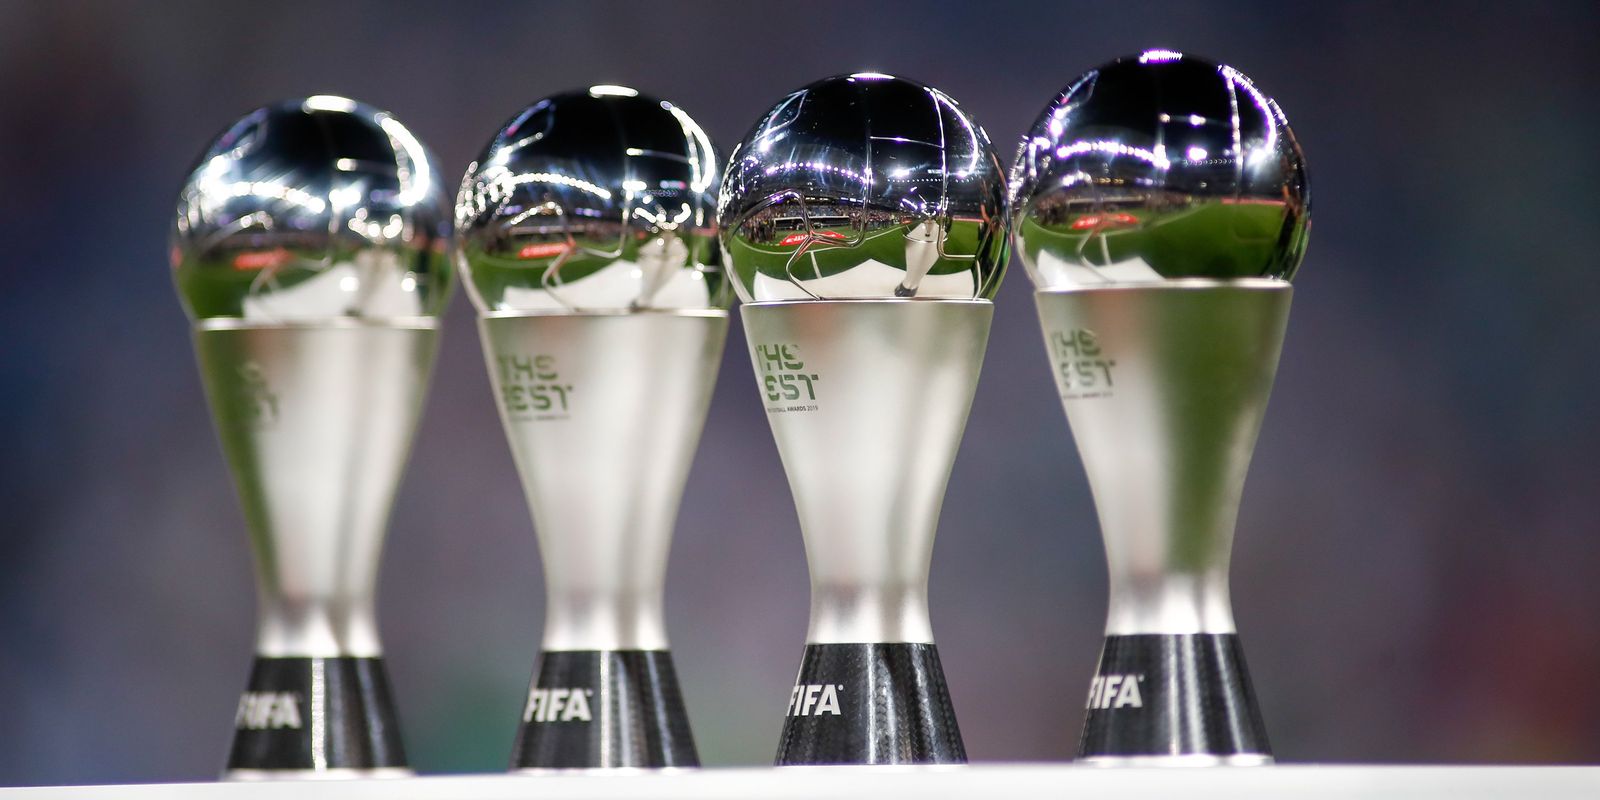 Todos os vencedores do prémio Melhor em Campo da UEFA Champions